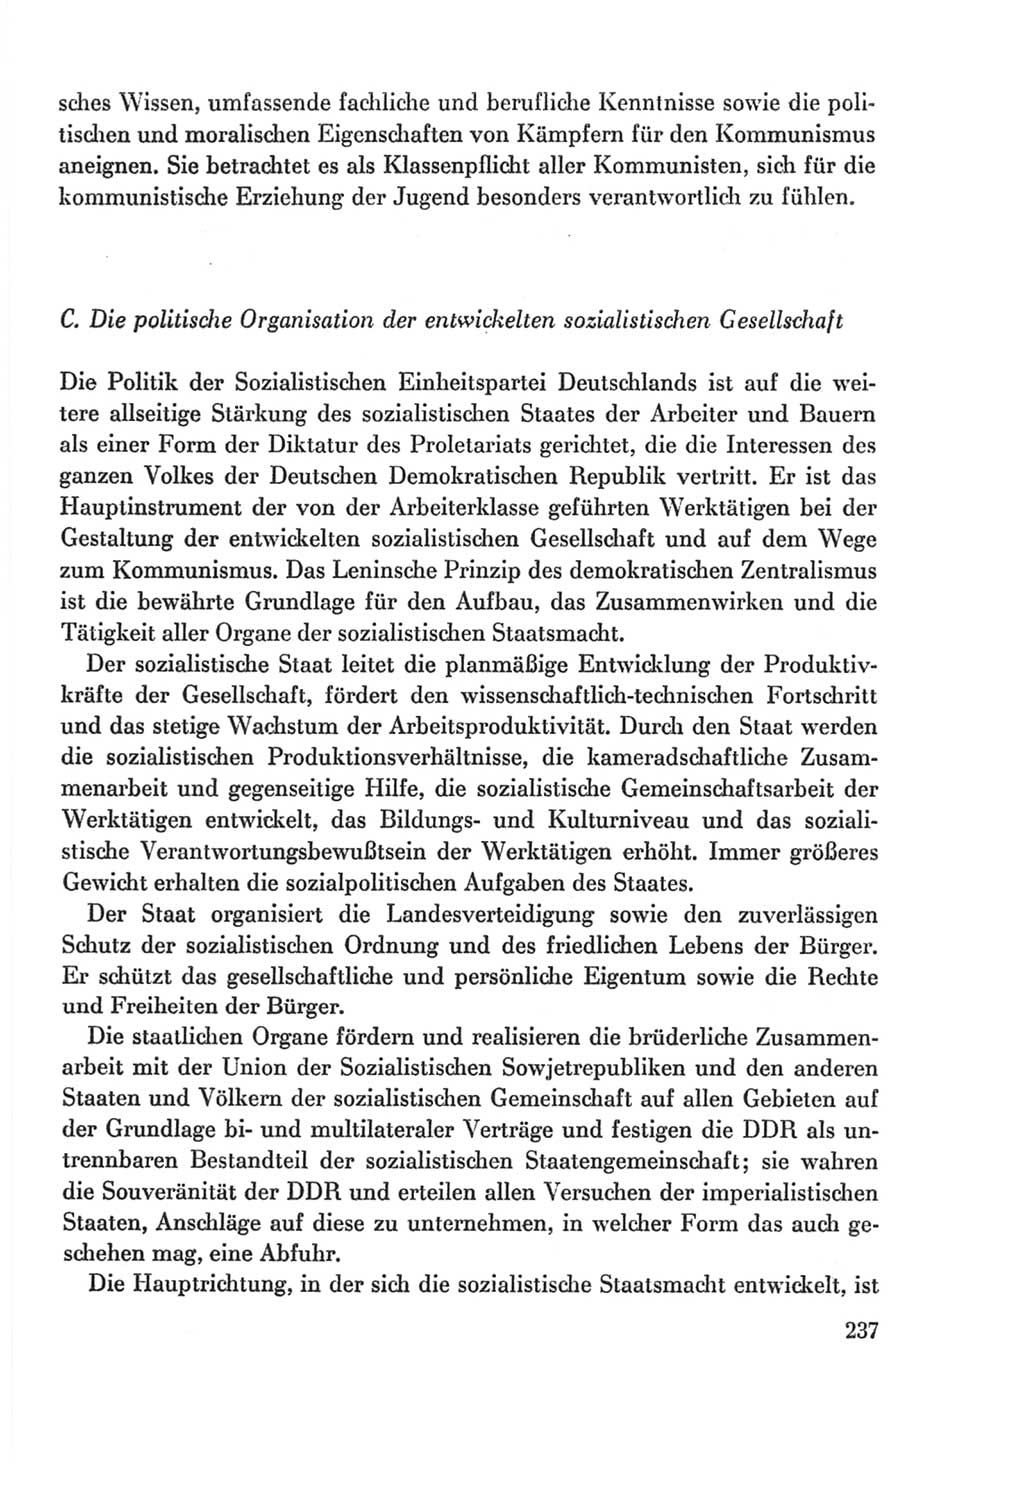 Protokoll der Verhandlungen des Ⅸ. Parteitages der Sozialistischen Einheitspartei Deutschlands (SED) [Deutsche Demokratische Republik (DDR)] 1976, Band 2, Seite 237 (Prot. Verh. Ⅸ. PT SED DDR 1976, Bd. 2, S. 237)